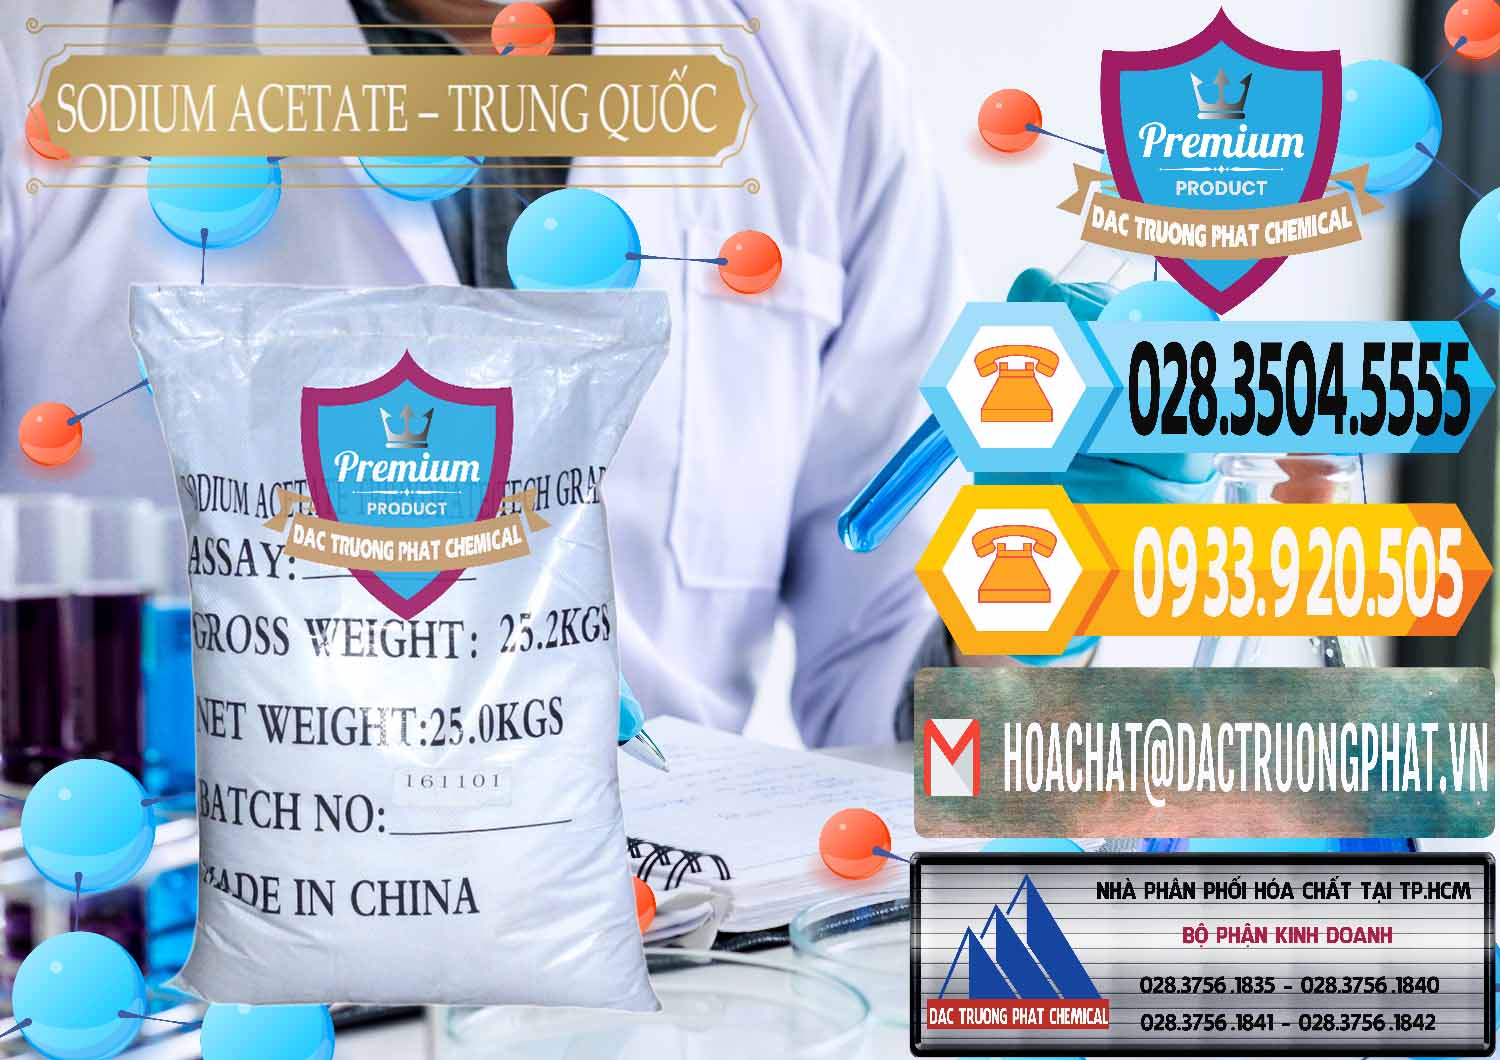 Công ty nhập khẩu - bán Sodium Acetate - Natri Acetate Trung Quốc China - 0134 - Nhà cung cấp & phân phối hóa chất tại TP.HCM - hoachattayrua.net